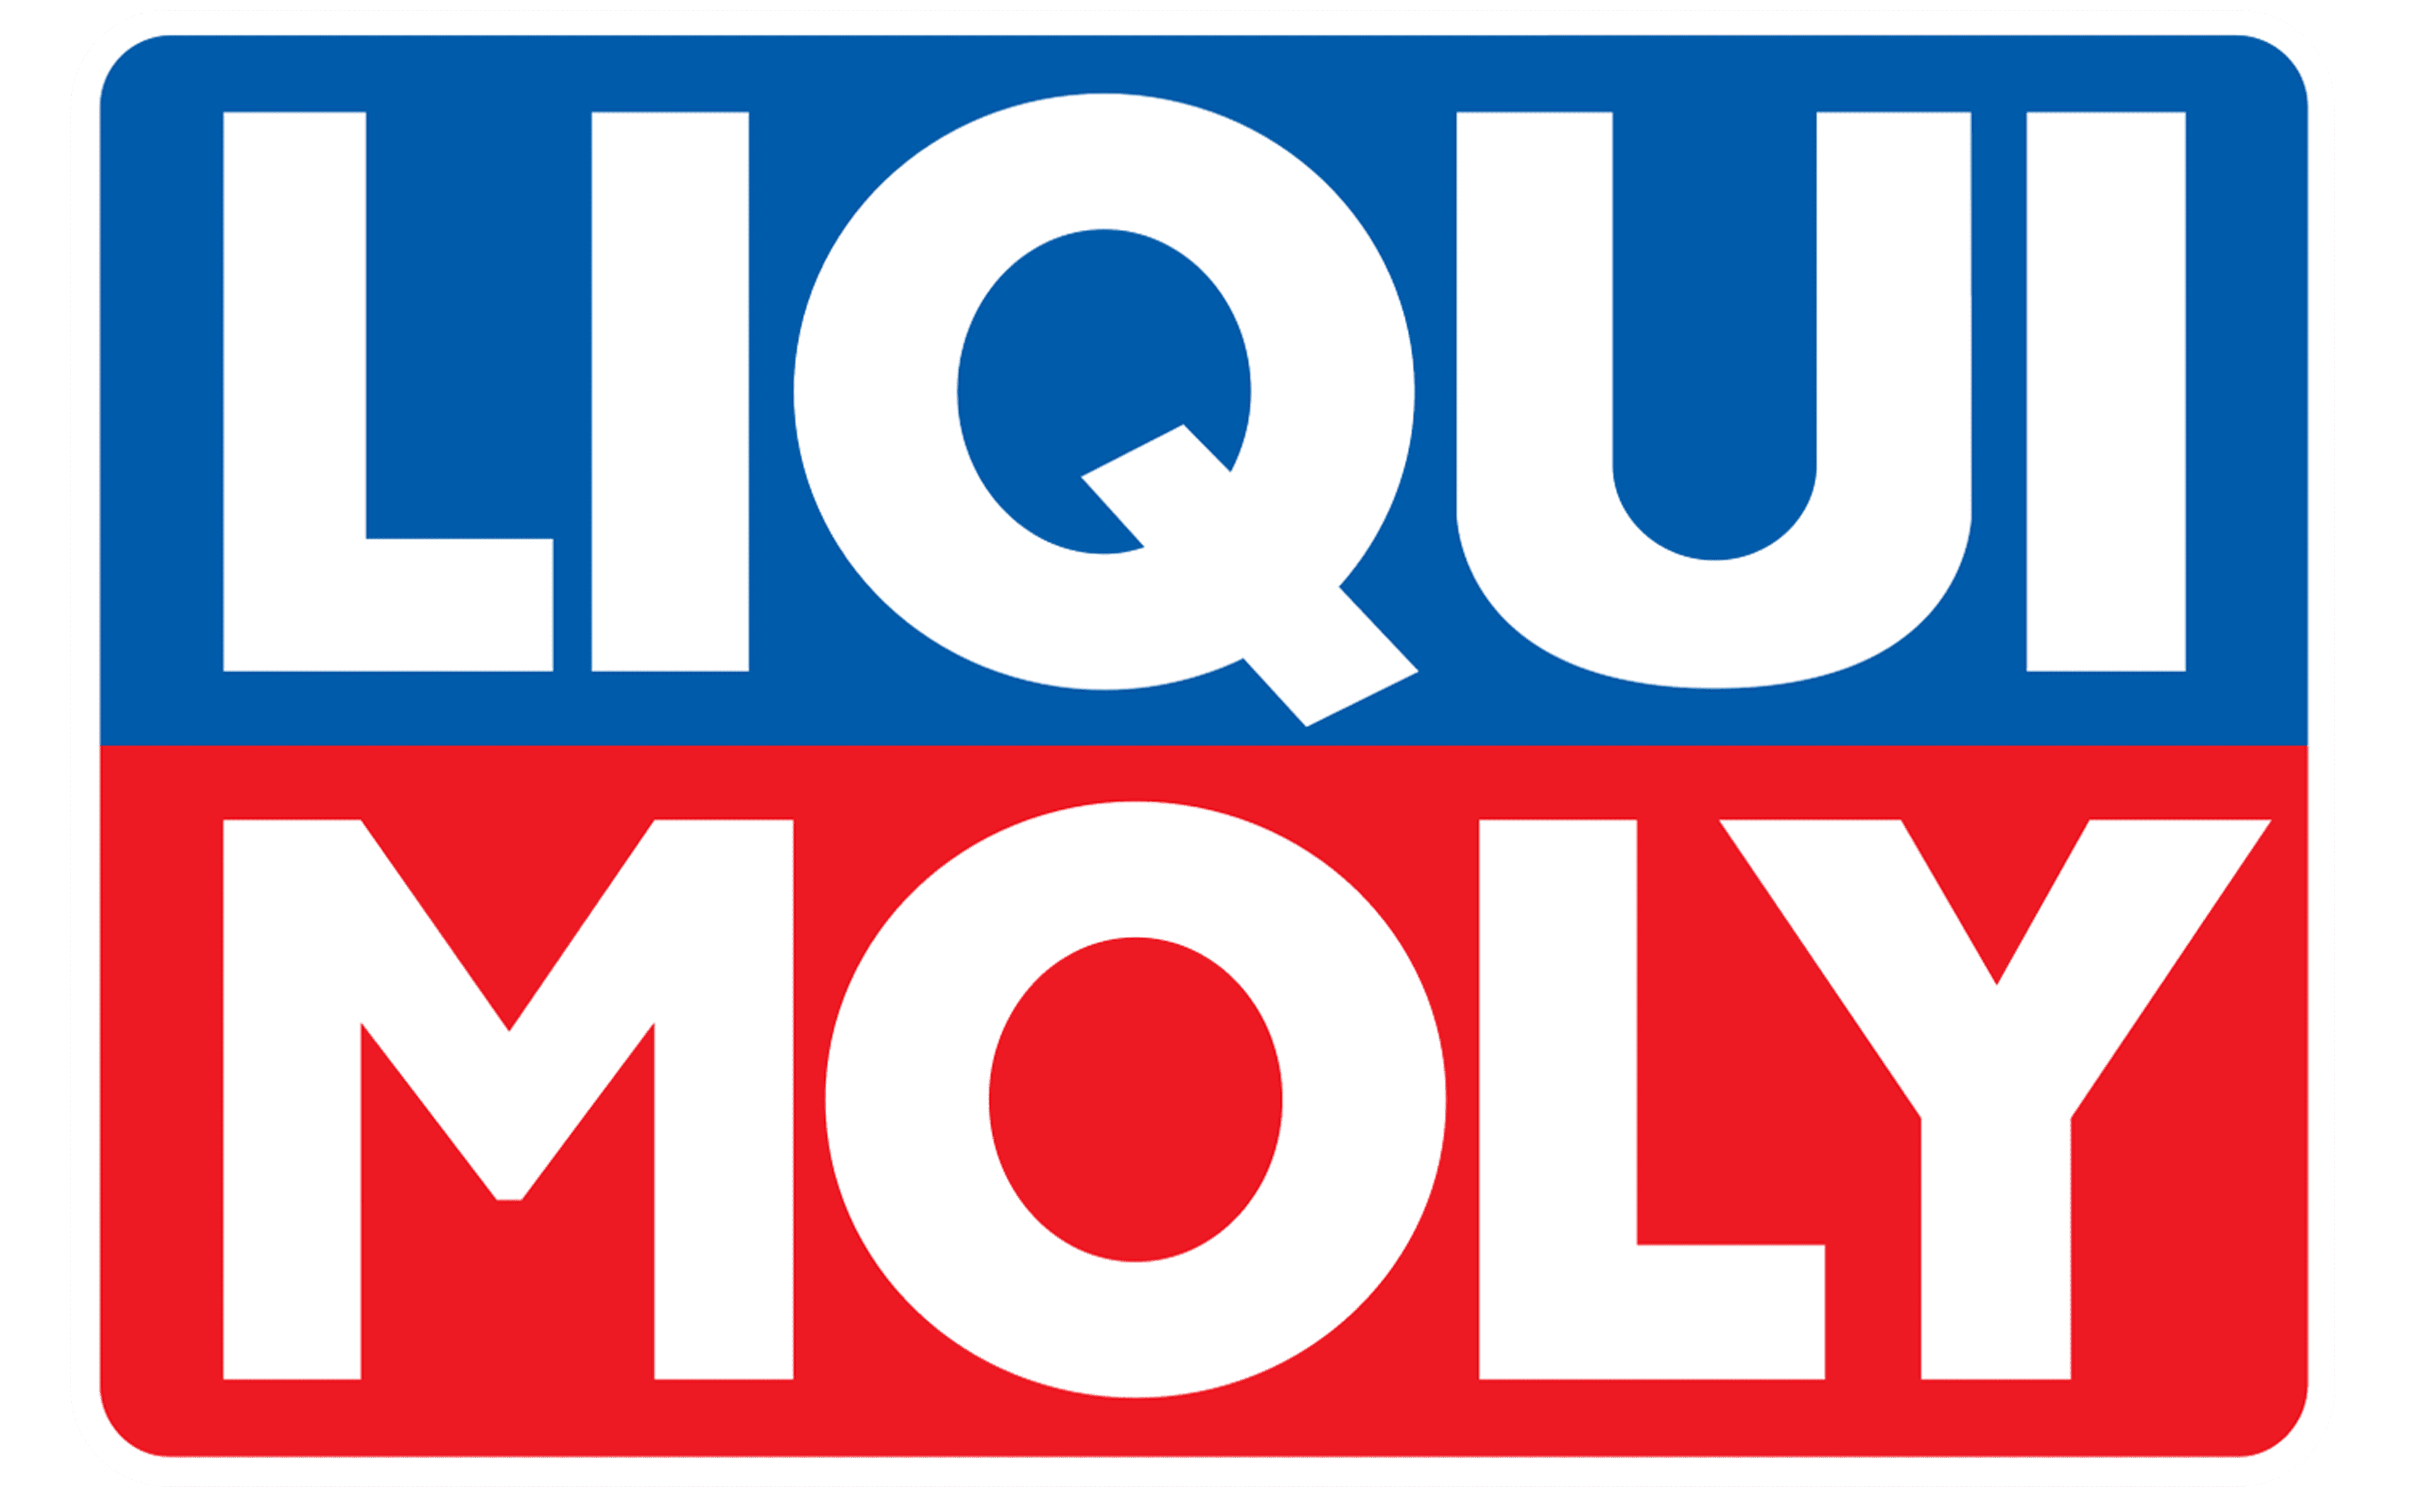 Liqui-Moly-Logo